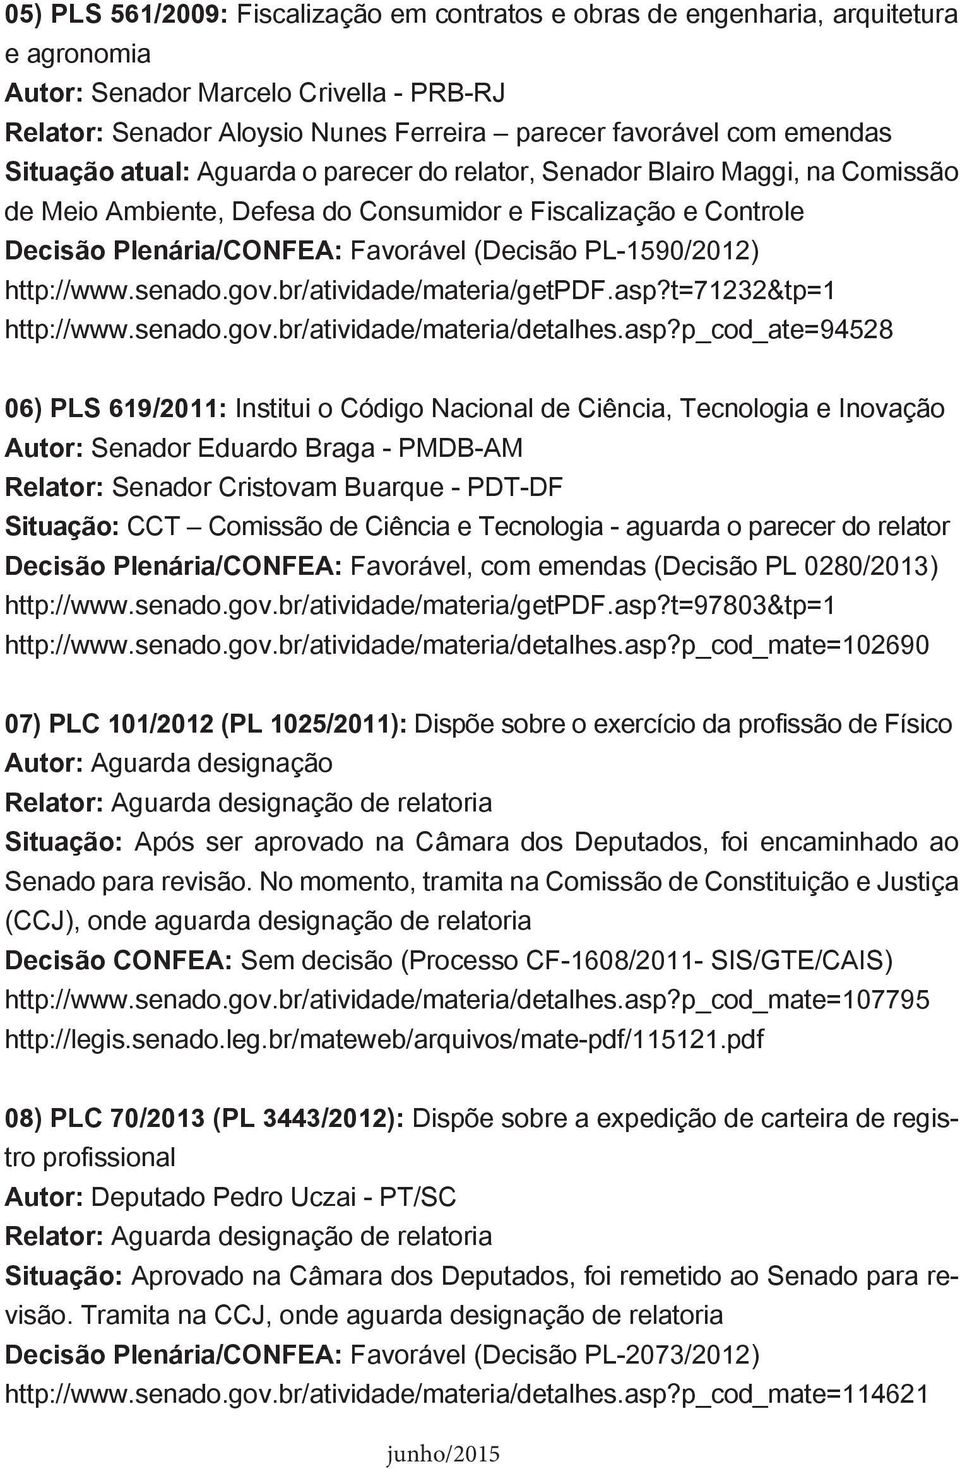 PL-1590/2012) http://www.senado.gov.br/atividade/materia/getpdf.asp?